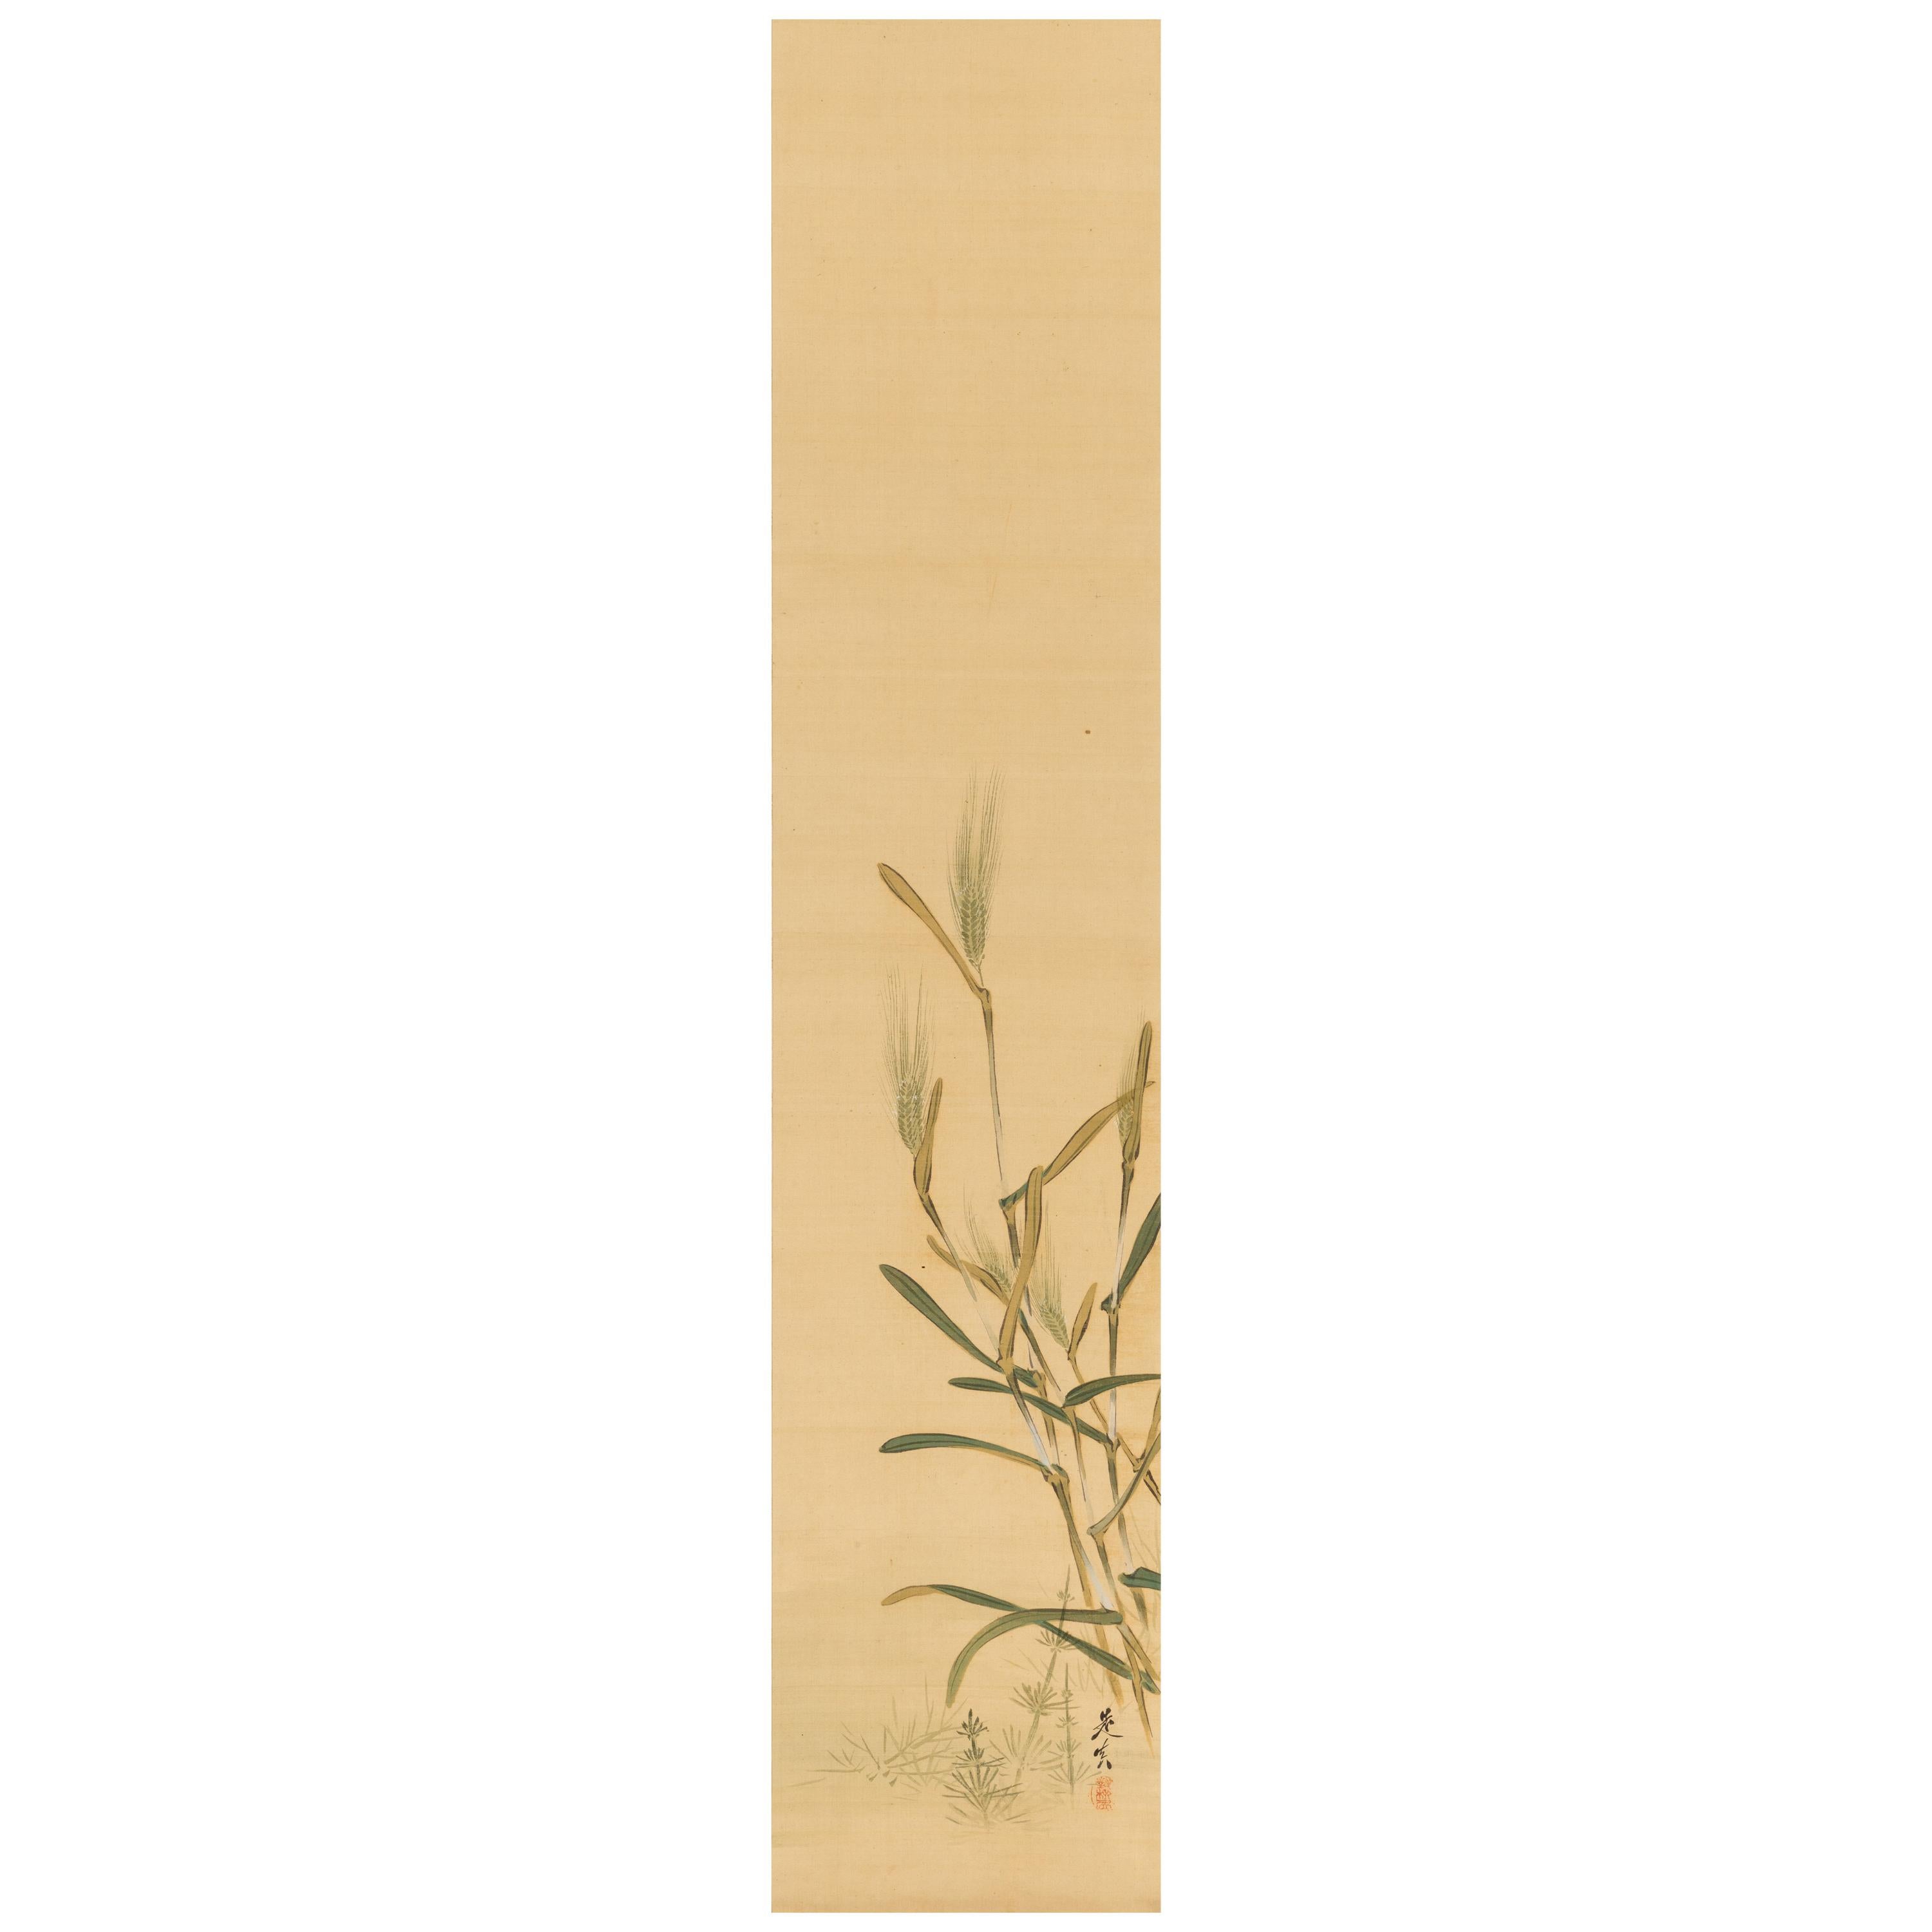 Shibata Zeshin ‘1807-1891’, Barley